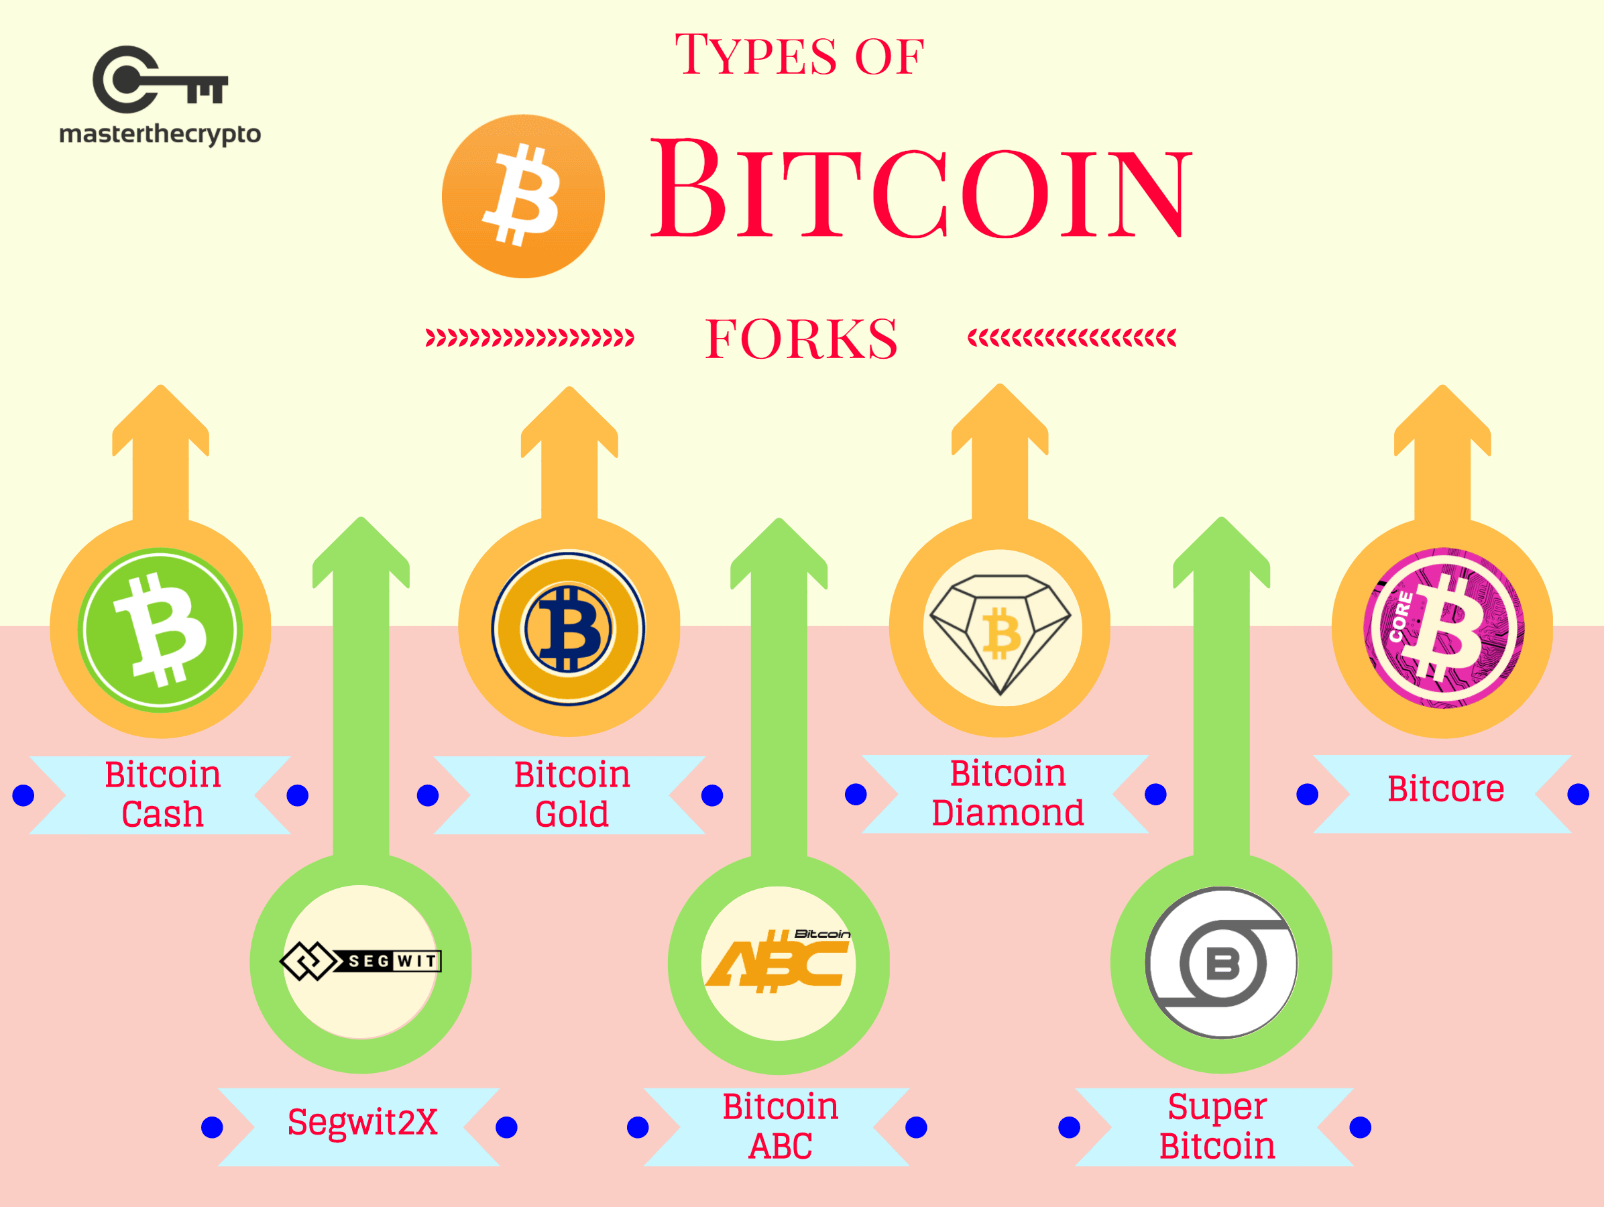 Guide to Bitcoin Hard Forks, Bitcoin Hard Forks, bitcoin cash, Bitcoin Gold, segwit2x